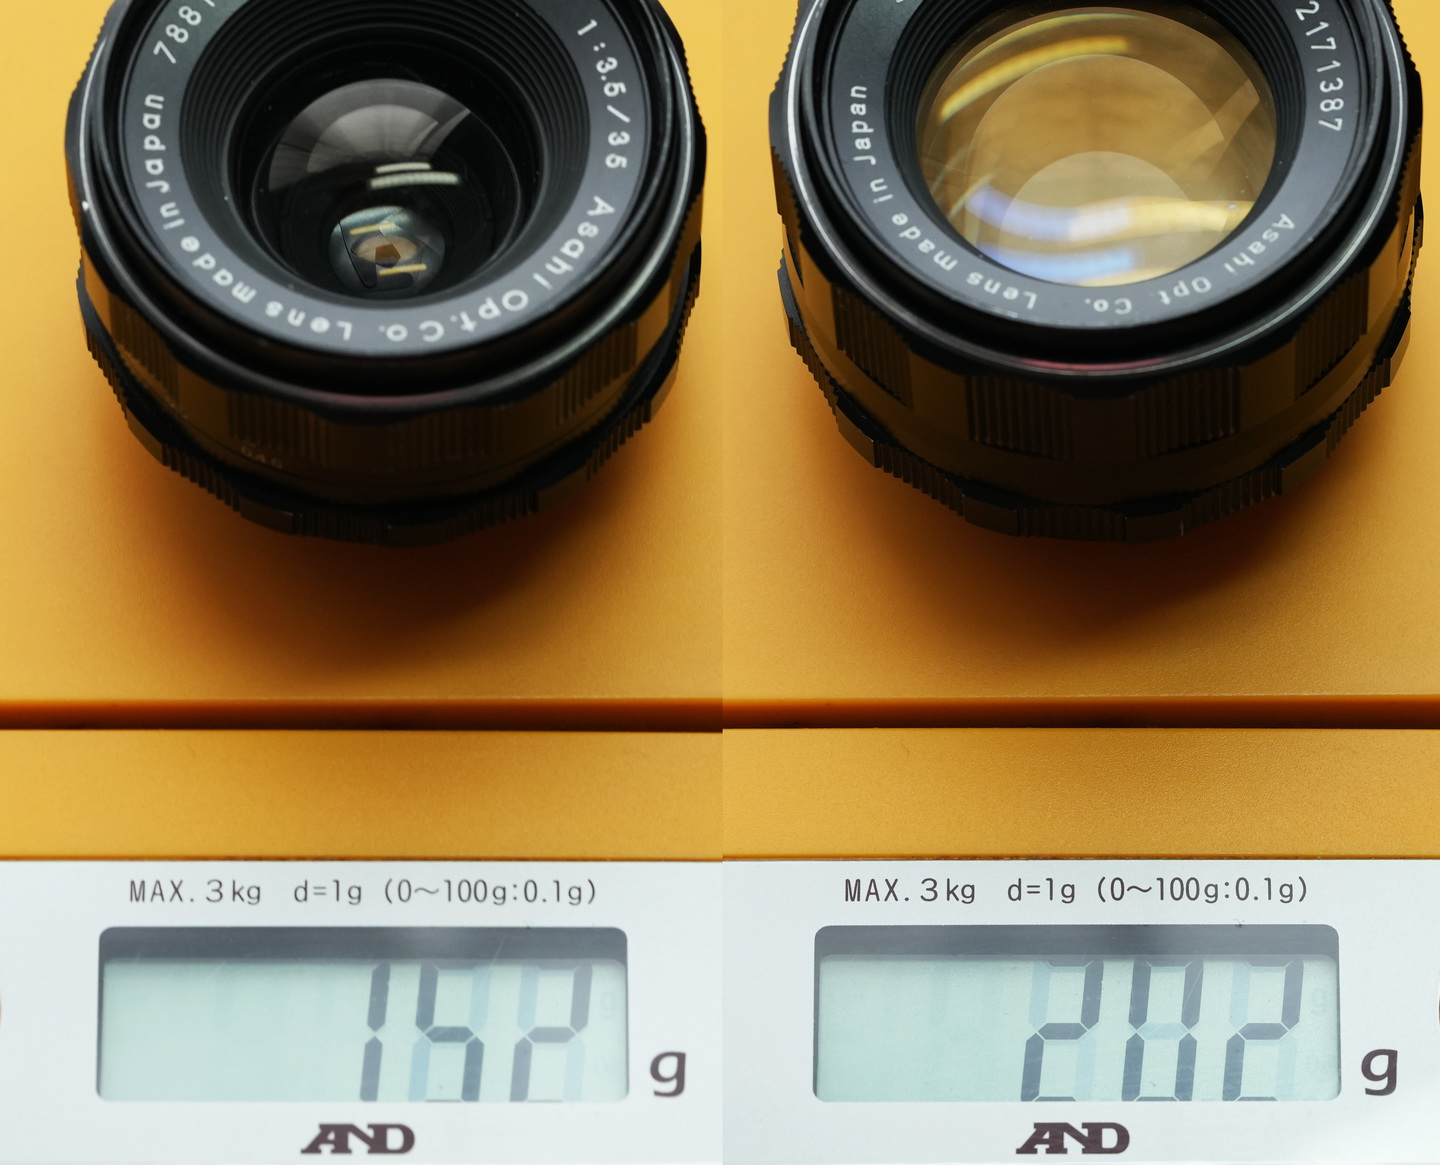 Canon EOS M3&スーパータクマレンズ35mm